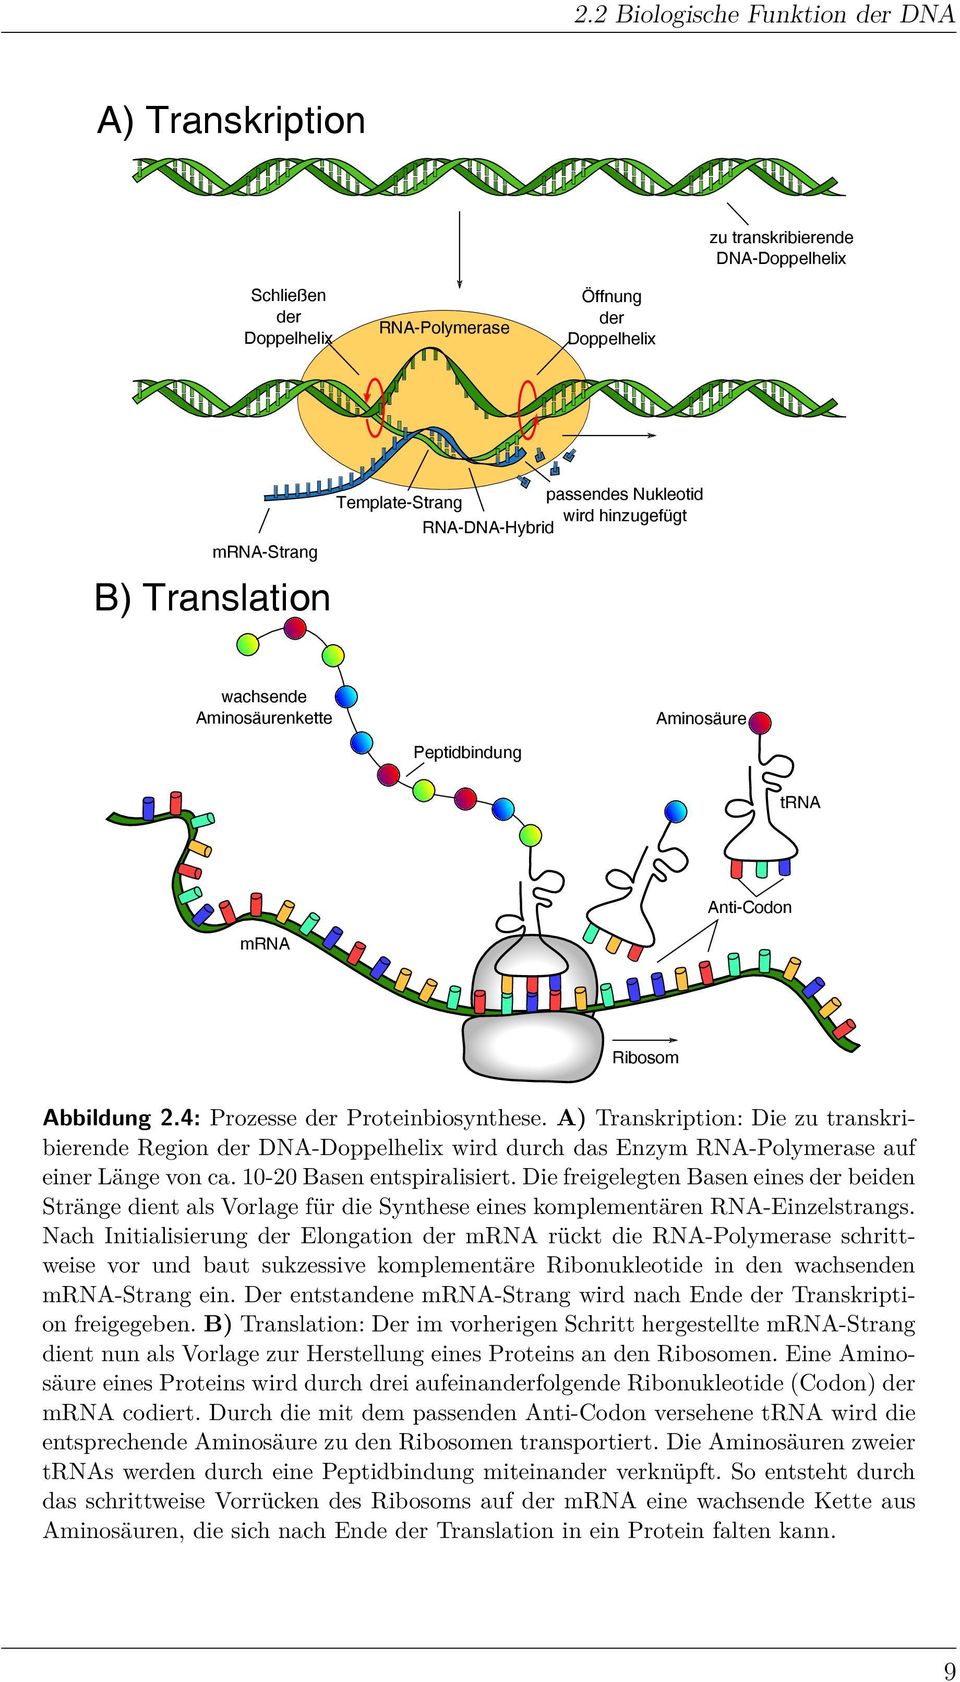 A) Transkription: Die zu transkribierende Region der DNA-Doppelhelix wird durch das Enzym RNA-Polymerase auf einer Länge von ca. 0-20 Basen entspiralisiert.